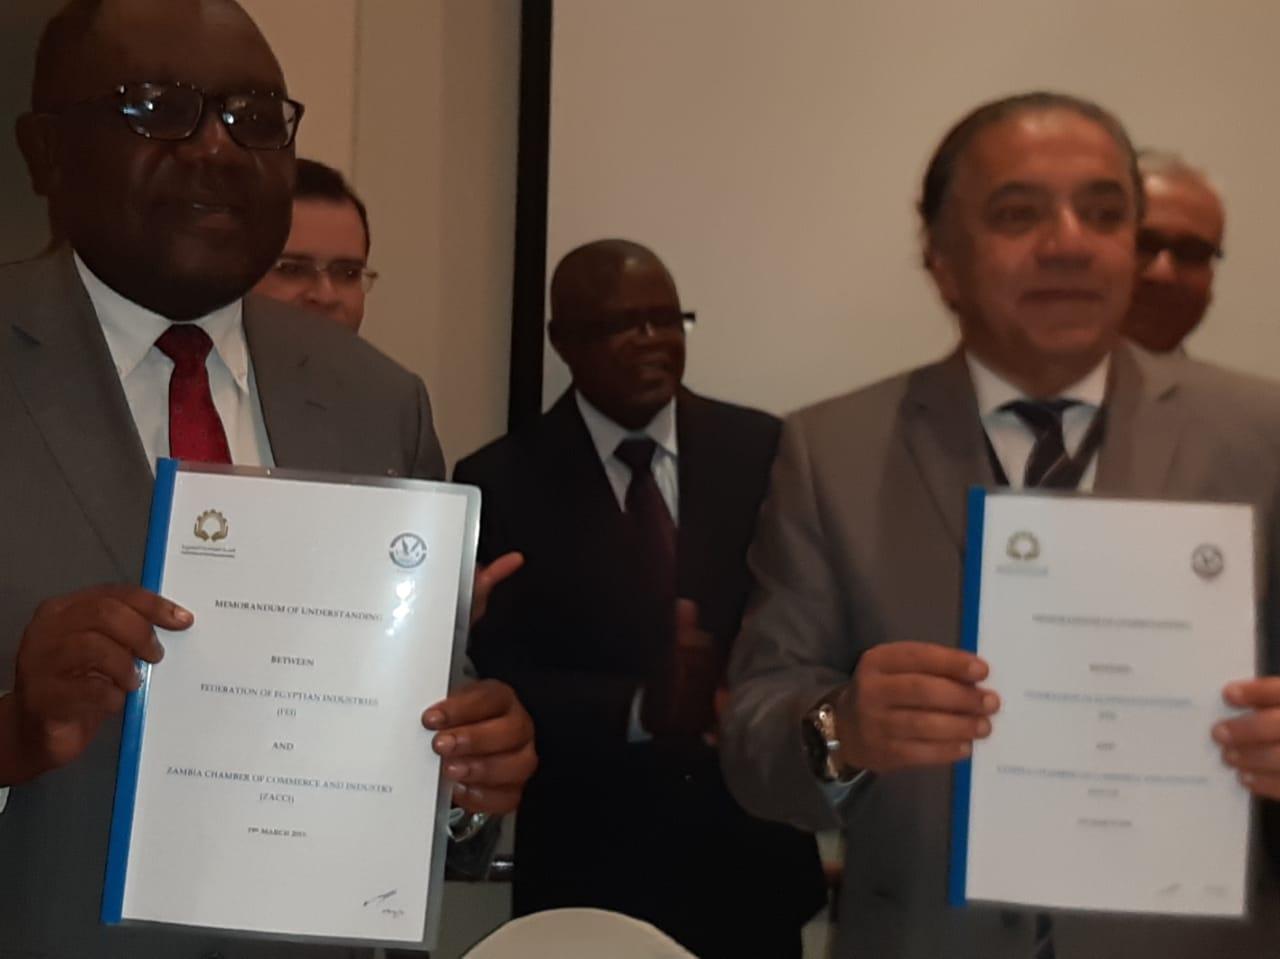   وزير التجارة والصناعة الزامبي يشهد توقيع بروتوكول تعاون بين اتحاد الصناعات المصرية واتحاد الغرف التجارية والصناعية